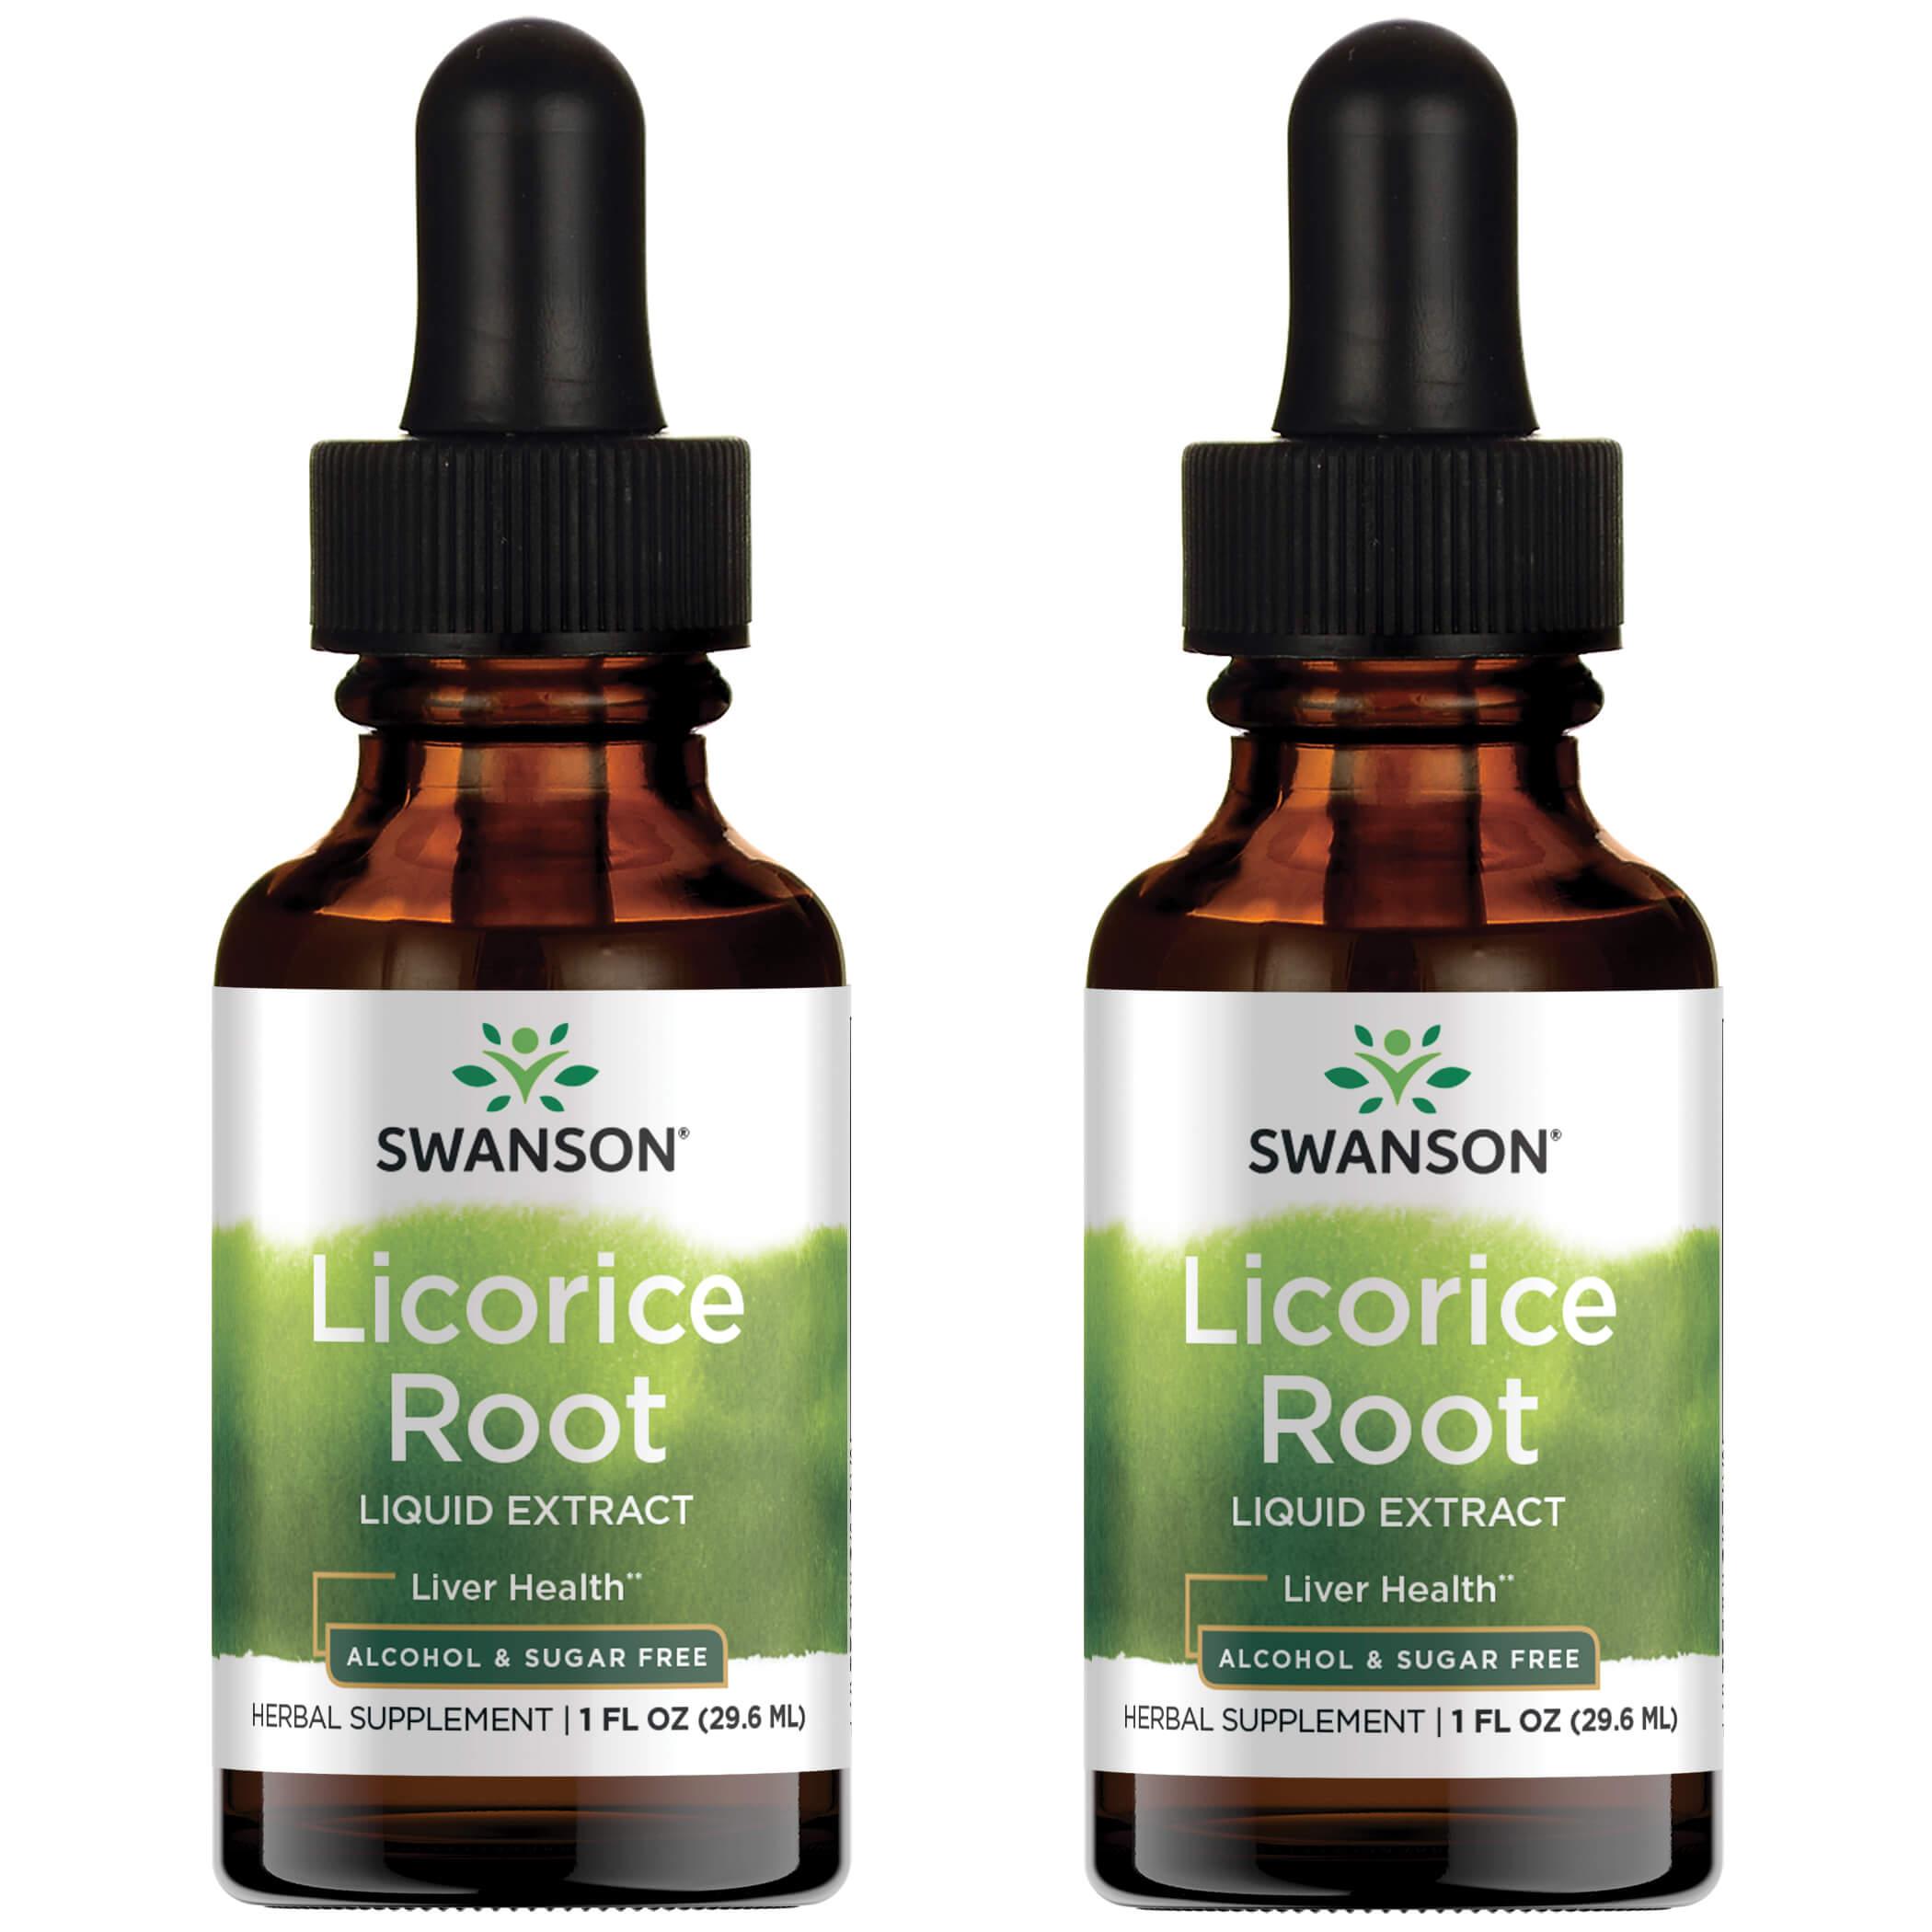 Swanson Premium Licorice Root Liquid Extract - Alcohol & Sugar Free 2 Pack Vitamin 2 G 1 fl oz Liquid